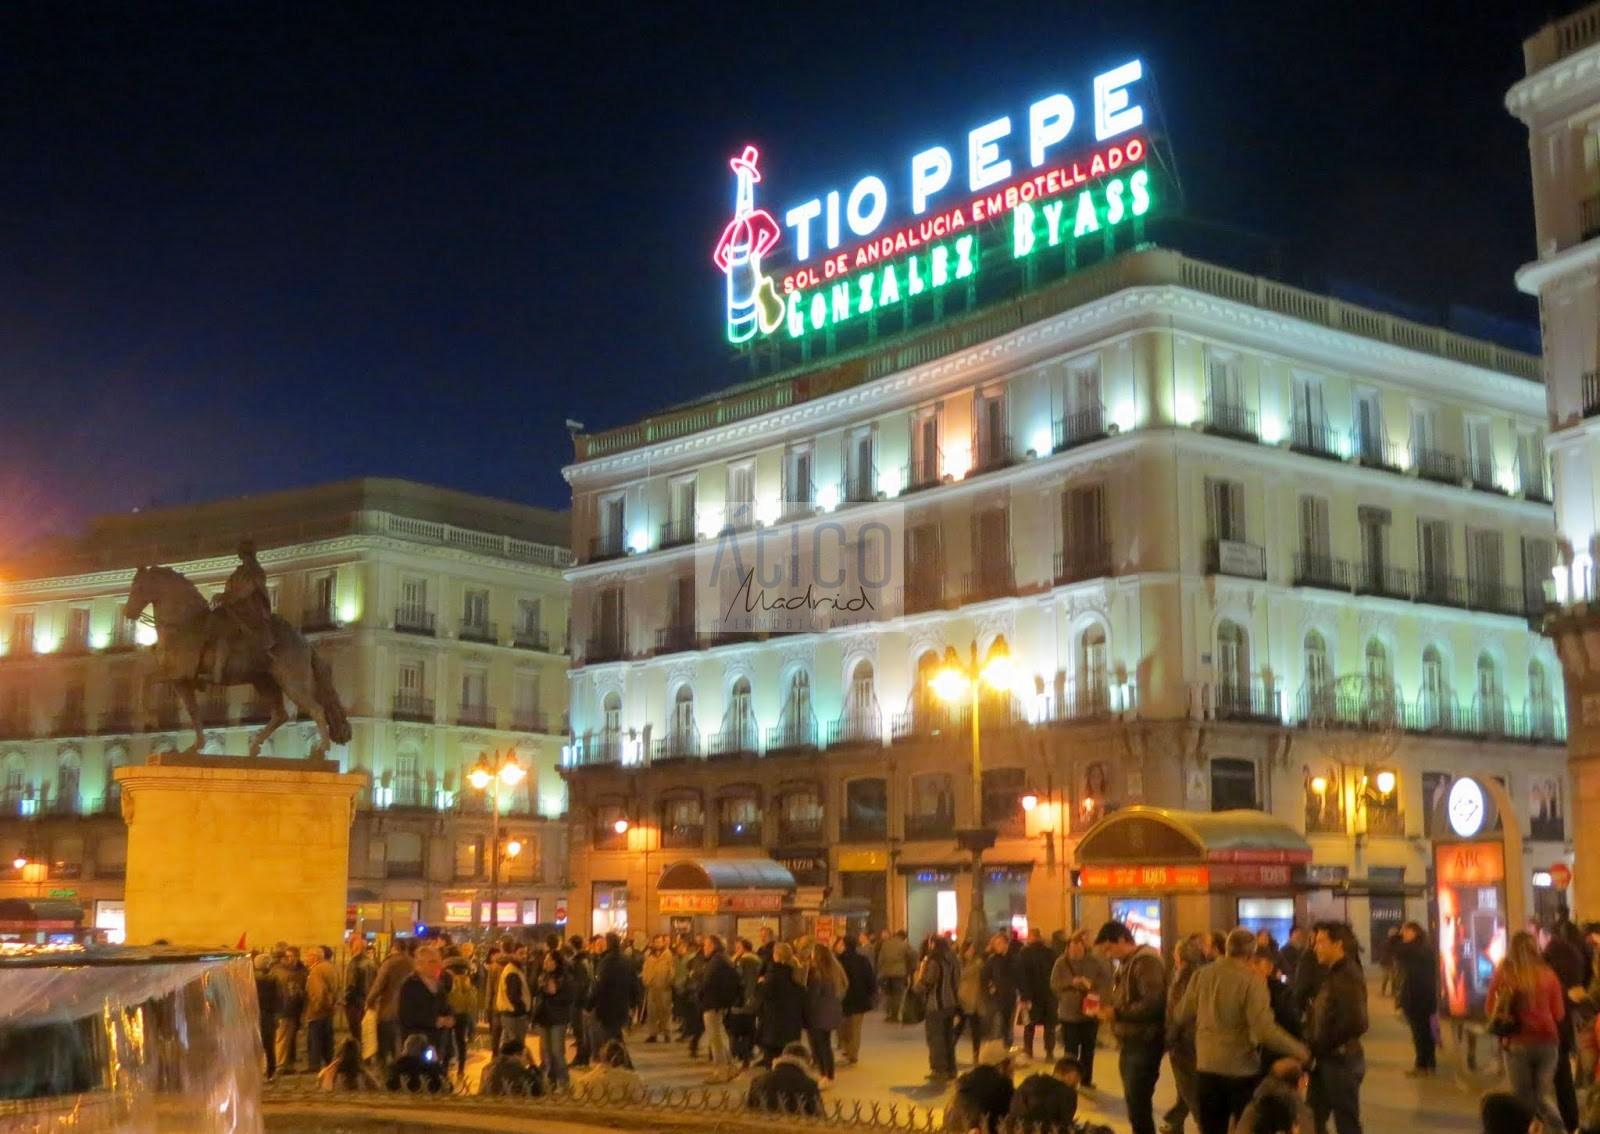 Alquiler de apartamento en Madrid